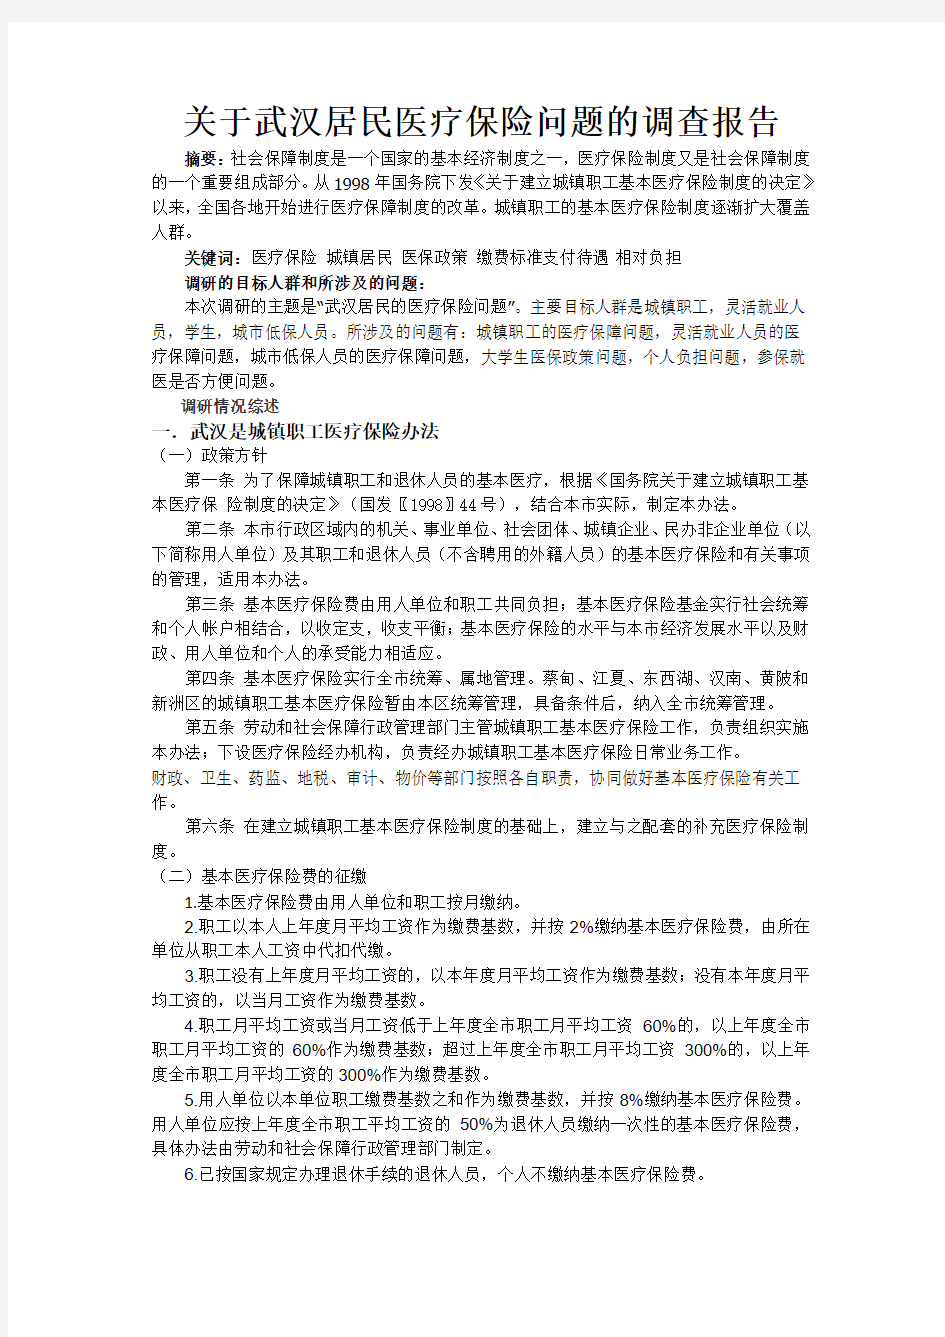 关于武汉居民医疗保险问题的调查报告